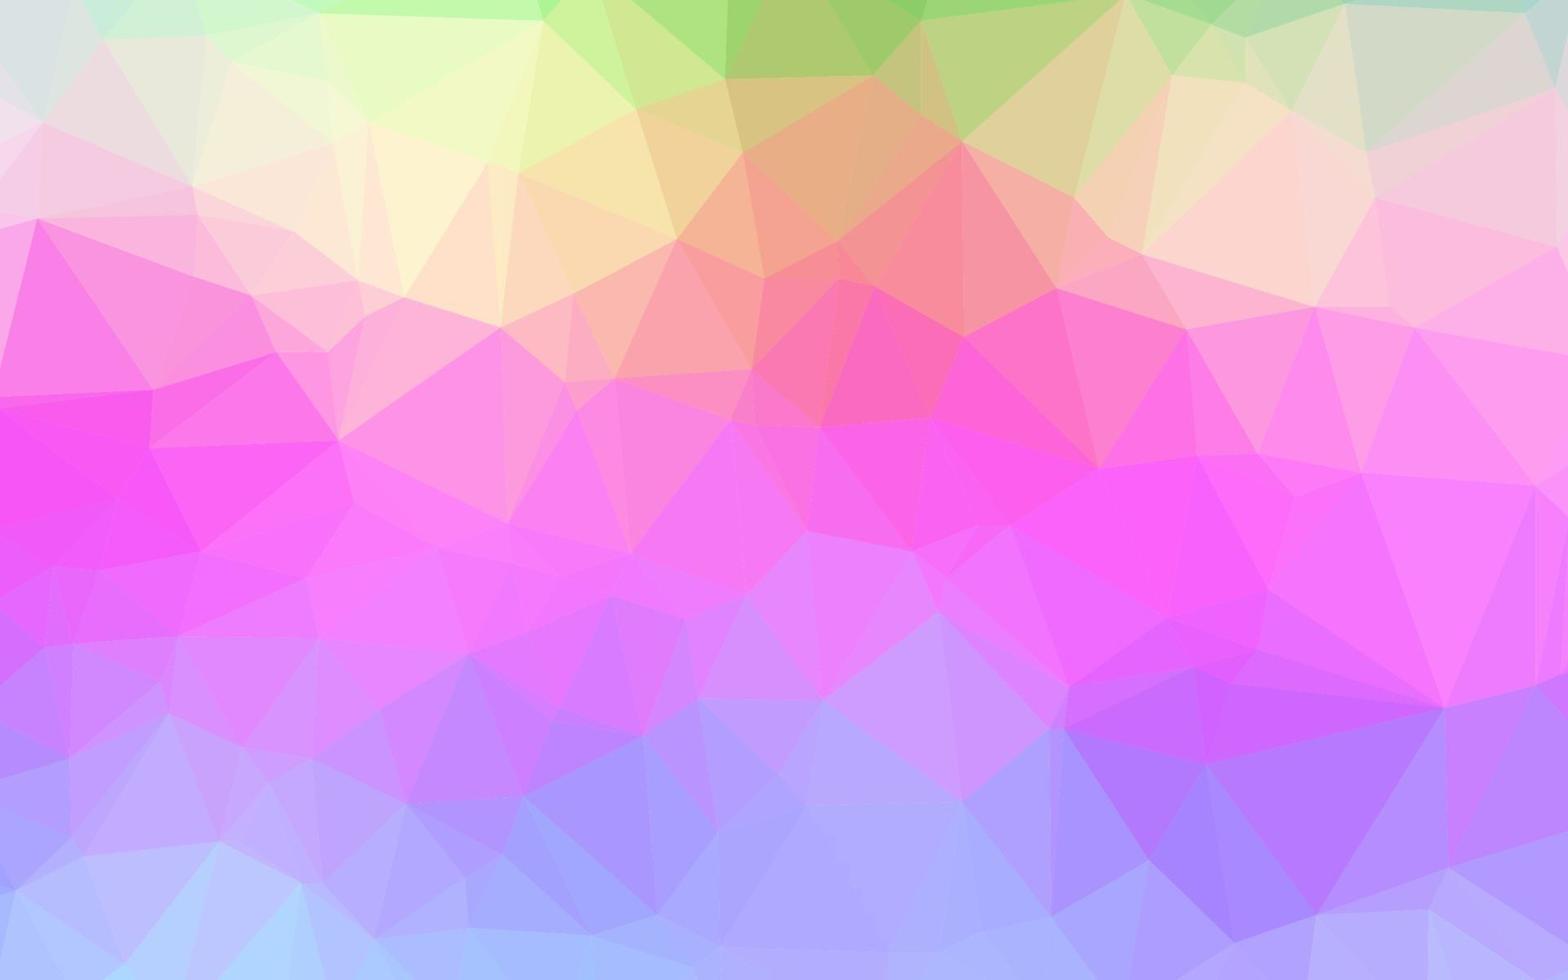 couverture polygonale abstraite multicolore légère, vecteur arc-en-ciel.